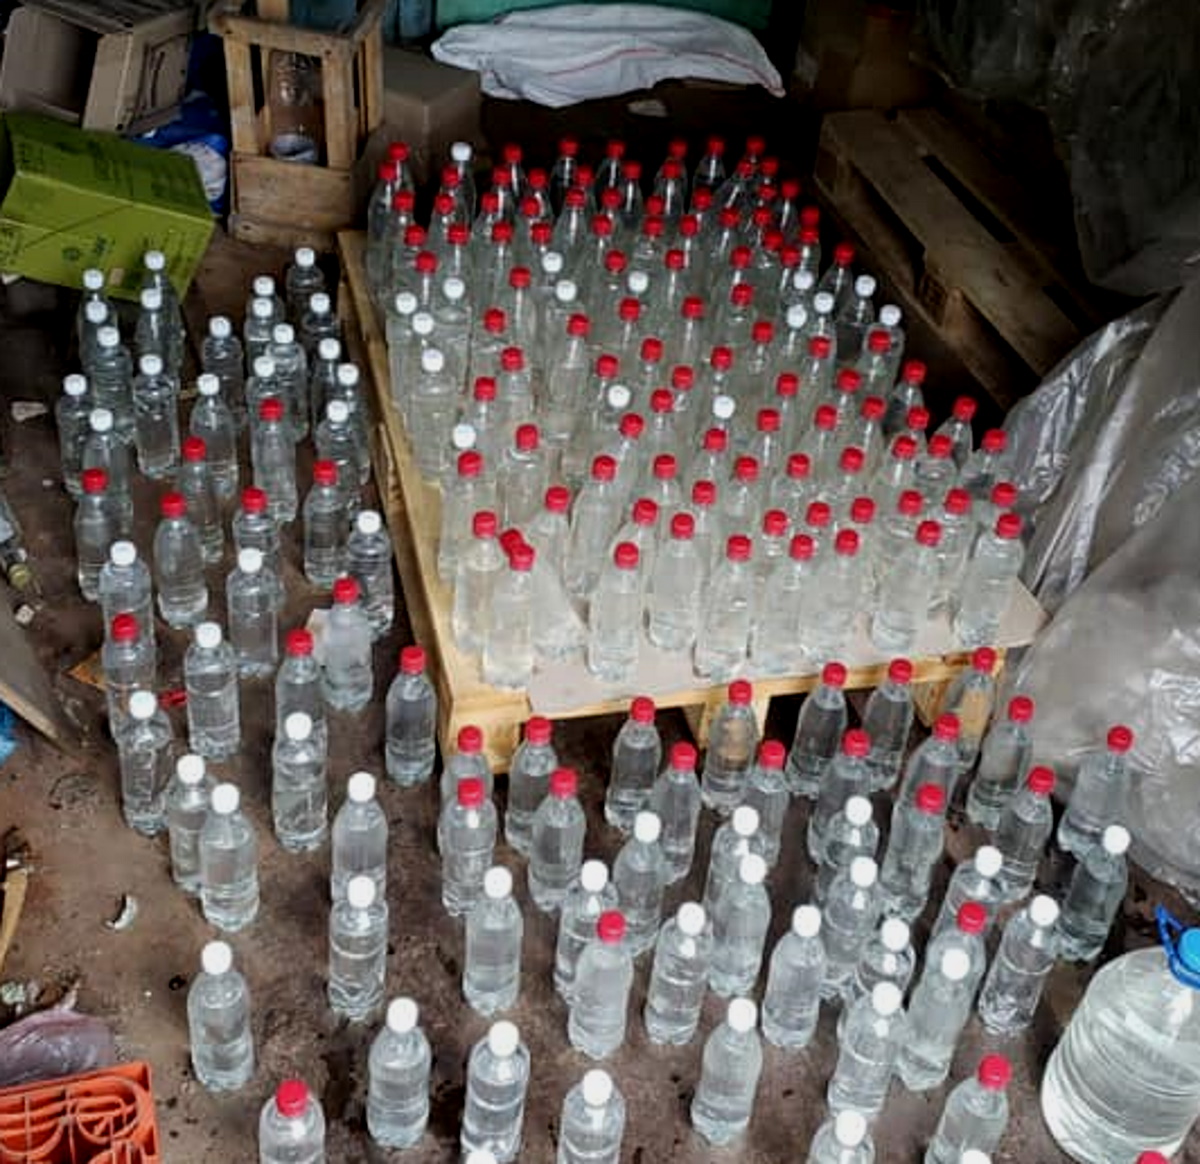 Полицейские конфисковали у "торговца" сотни пластиковых бутылок с "товаром".